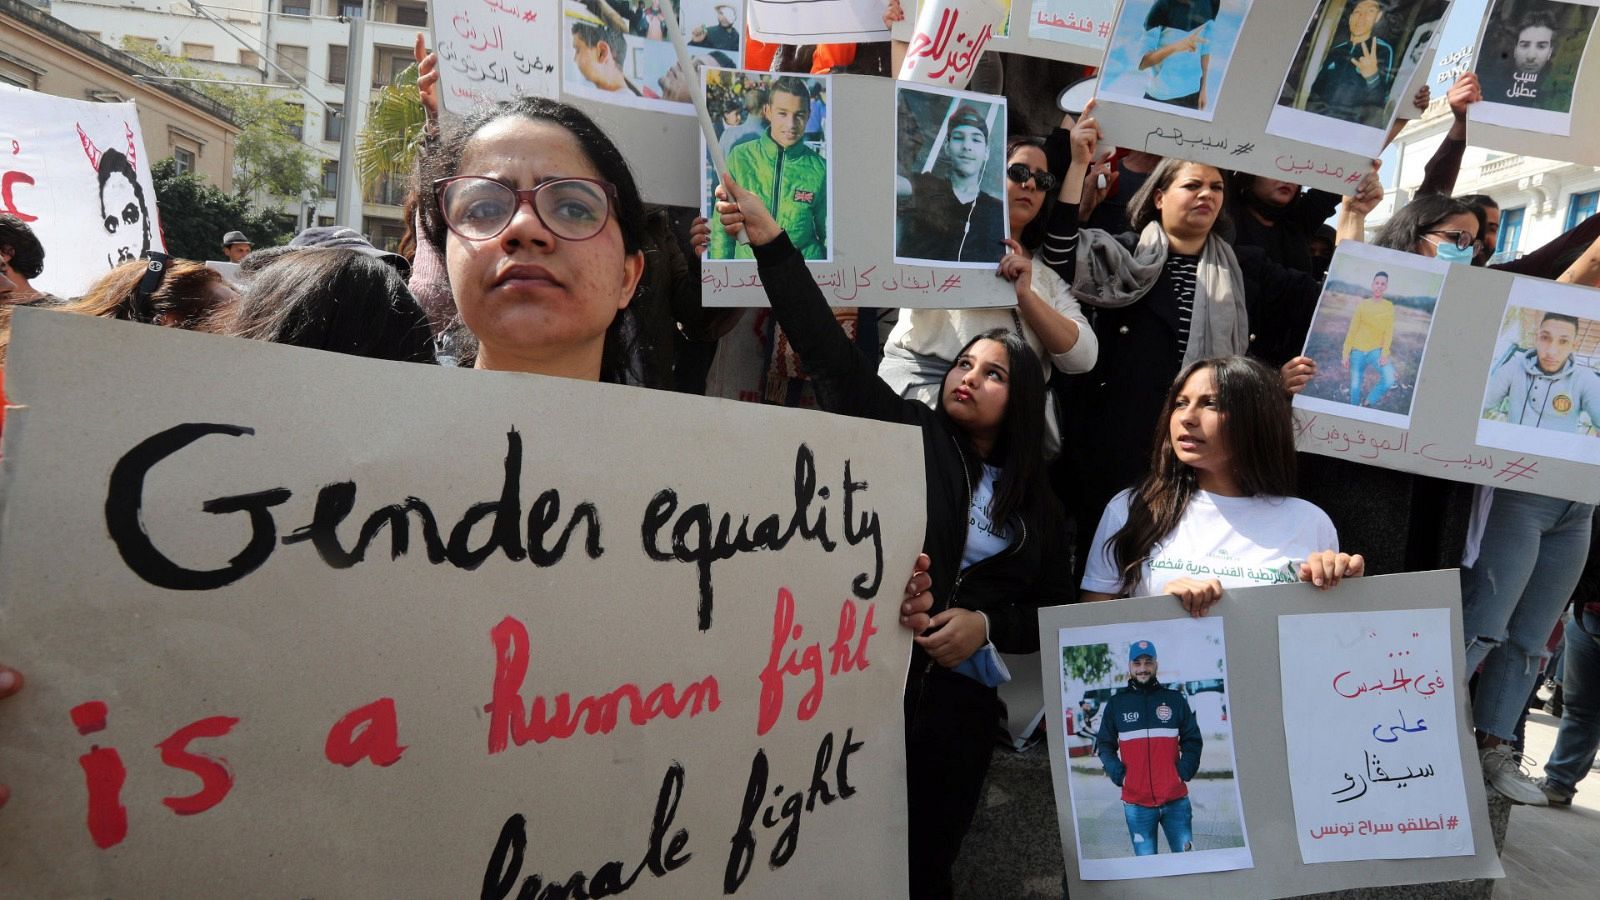 Túnez es el país árabo-musulmán más avanzado en el reconocimiento de los derechos de las mujeres